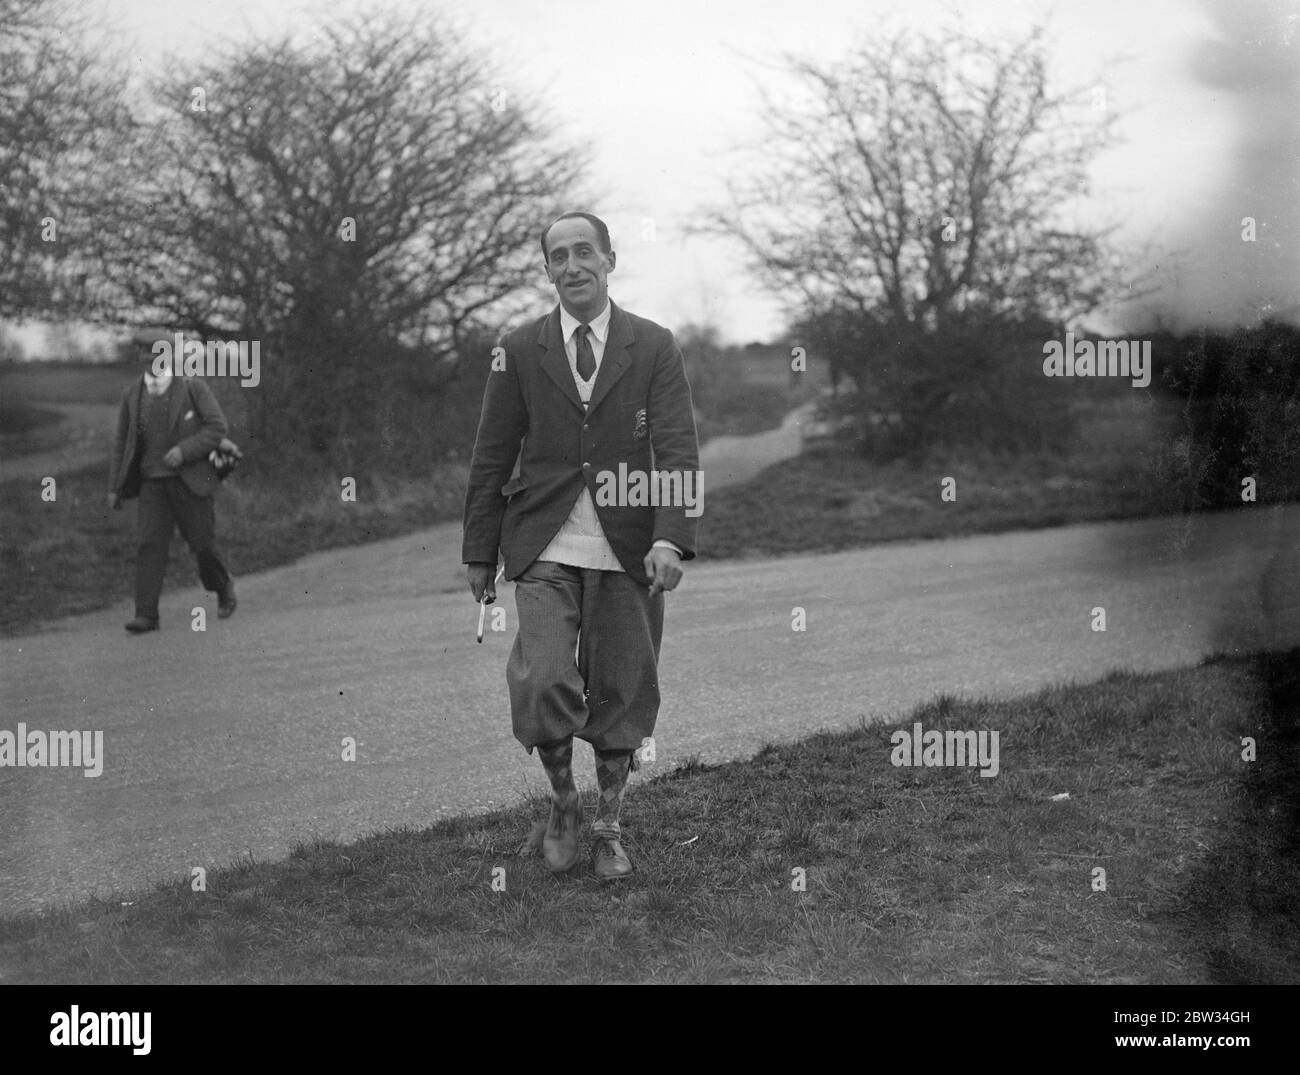 Essex County Cricketer besiegt durch den Prince of Wales in Parlamentarischen Golf Spiel. Herr Charles Bray zu Fuß auf dem Platz, nachdem er von der Prince of Wales in der zweiten Runde des Parliamentary Golf Handicap in Walton Health, Surrey besiegt worden. Herr Charles Bray ist ein Essex County Cricketer. 25. April 1932 Stockfoto